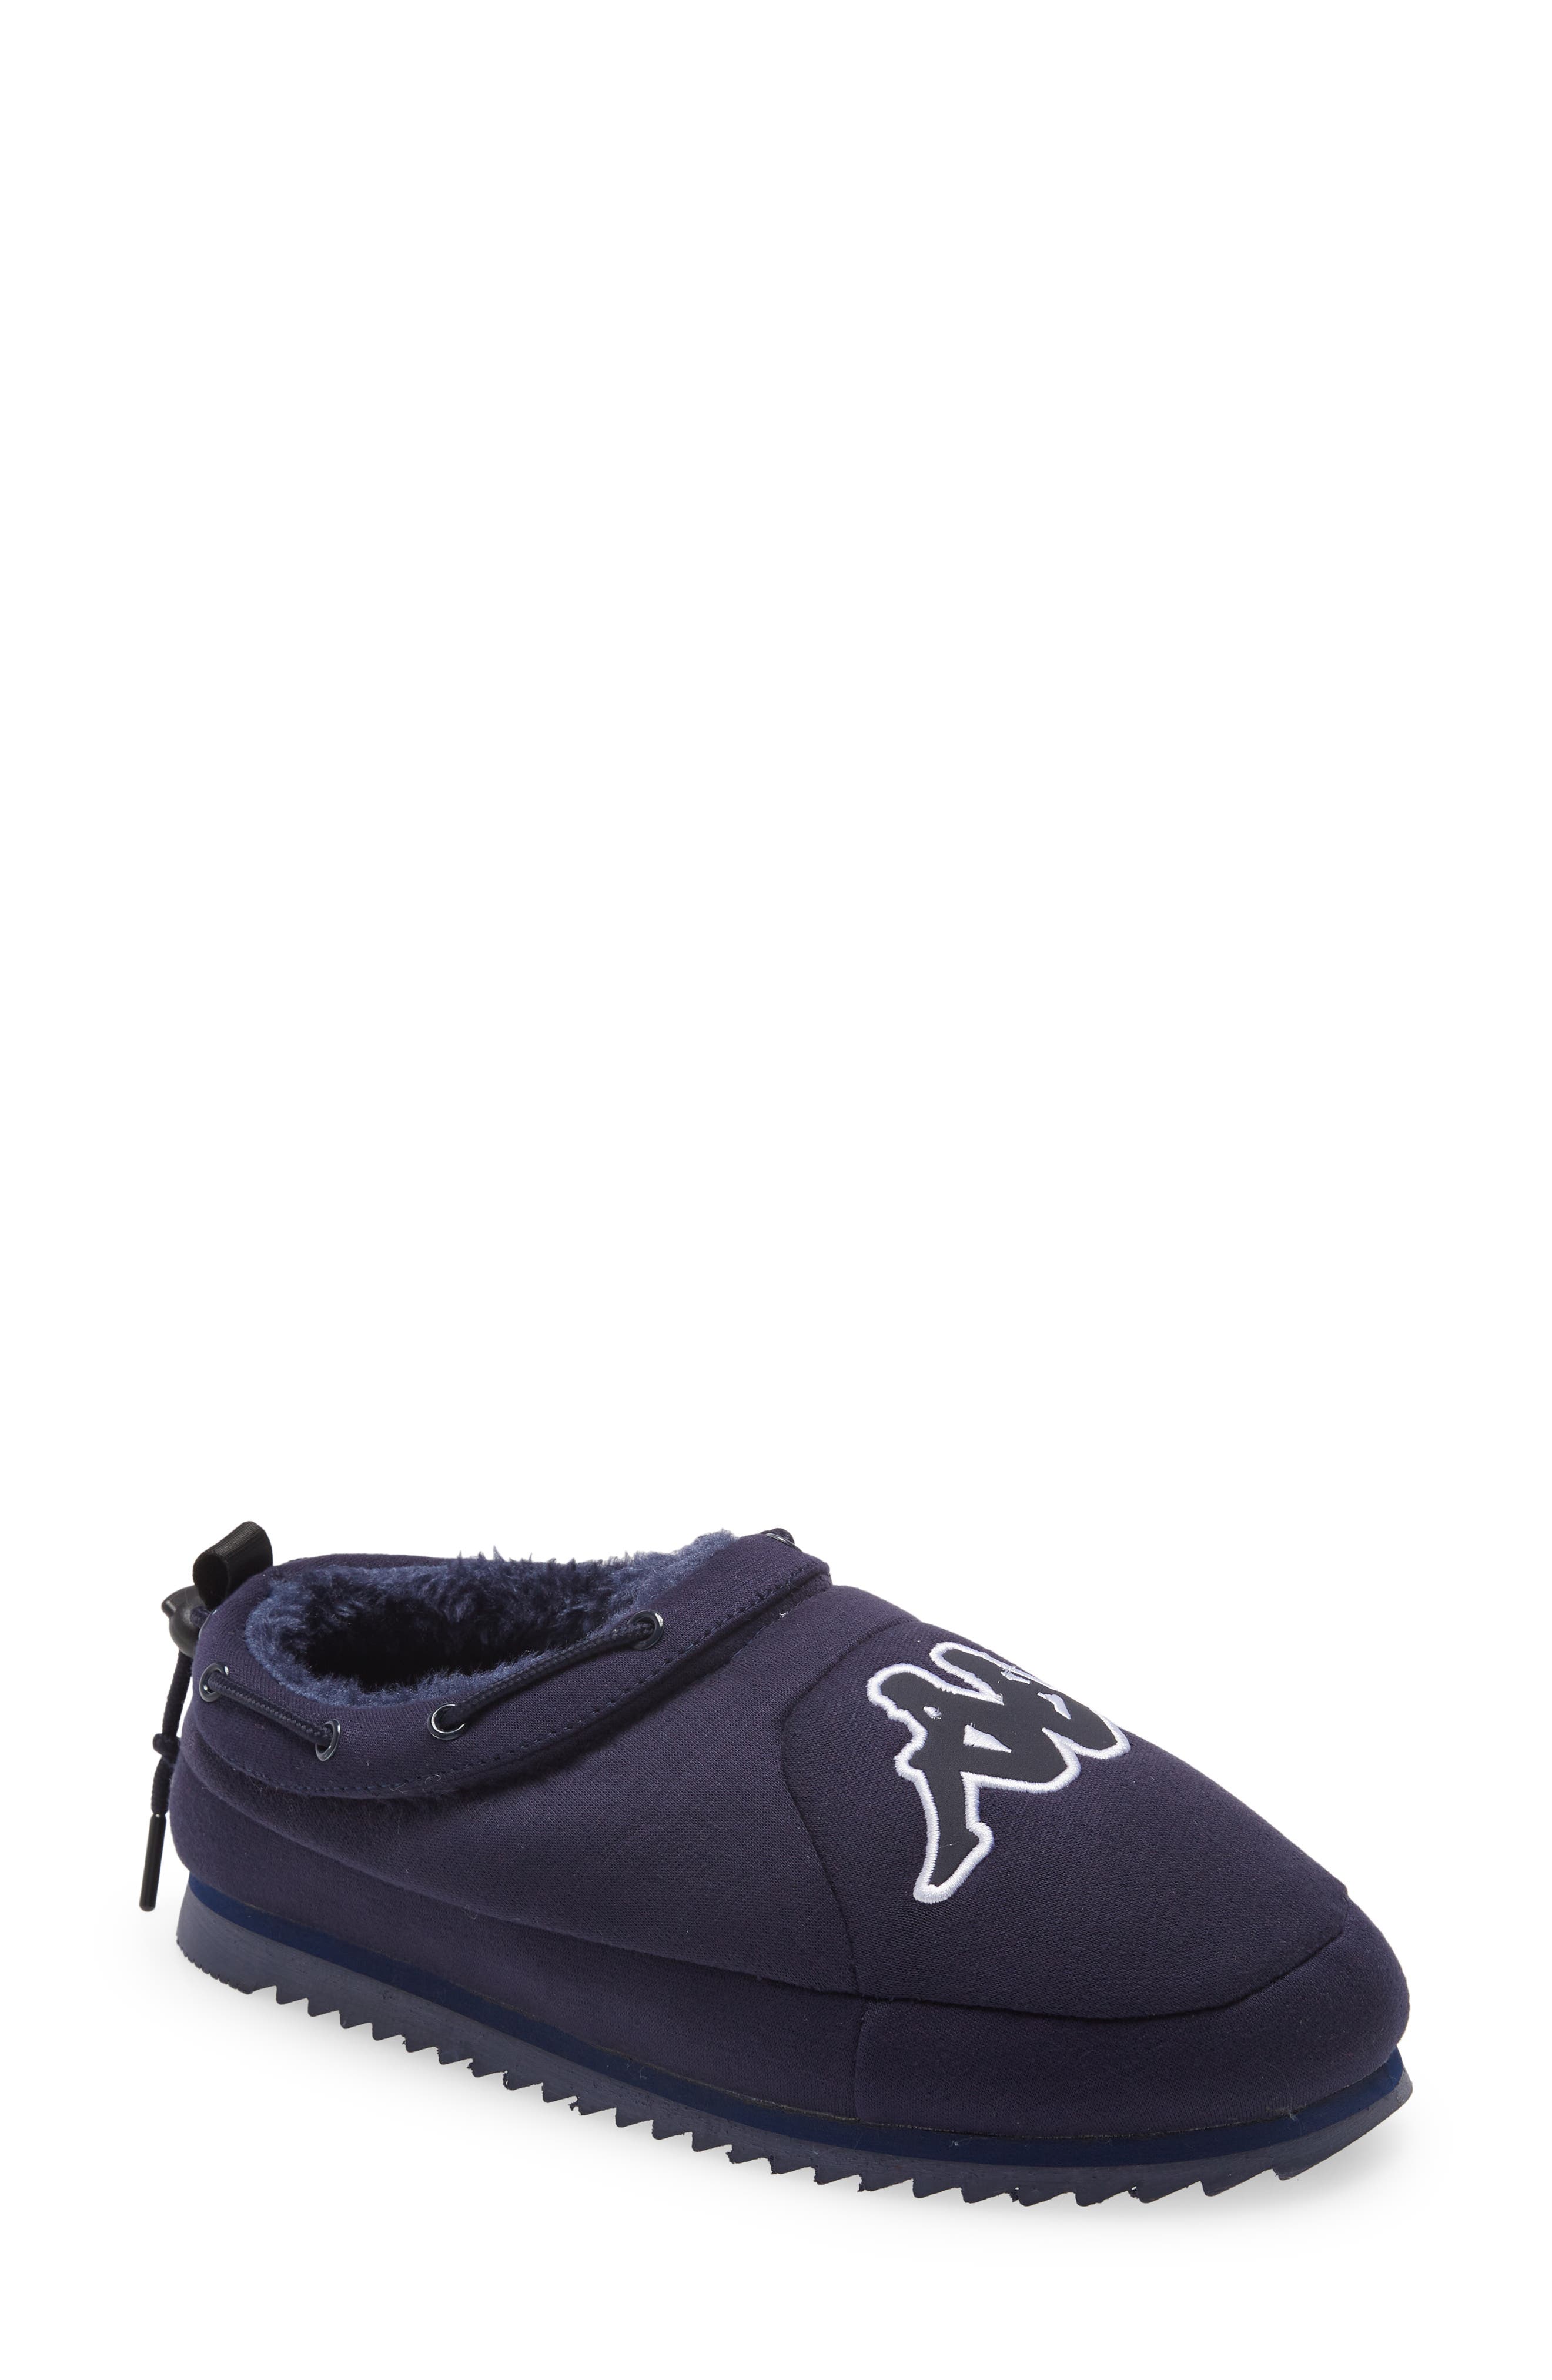 Kappa Tasin Logo Sneaker Mule in Blue/White at Nordstrom, Size 11